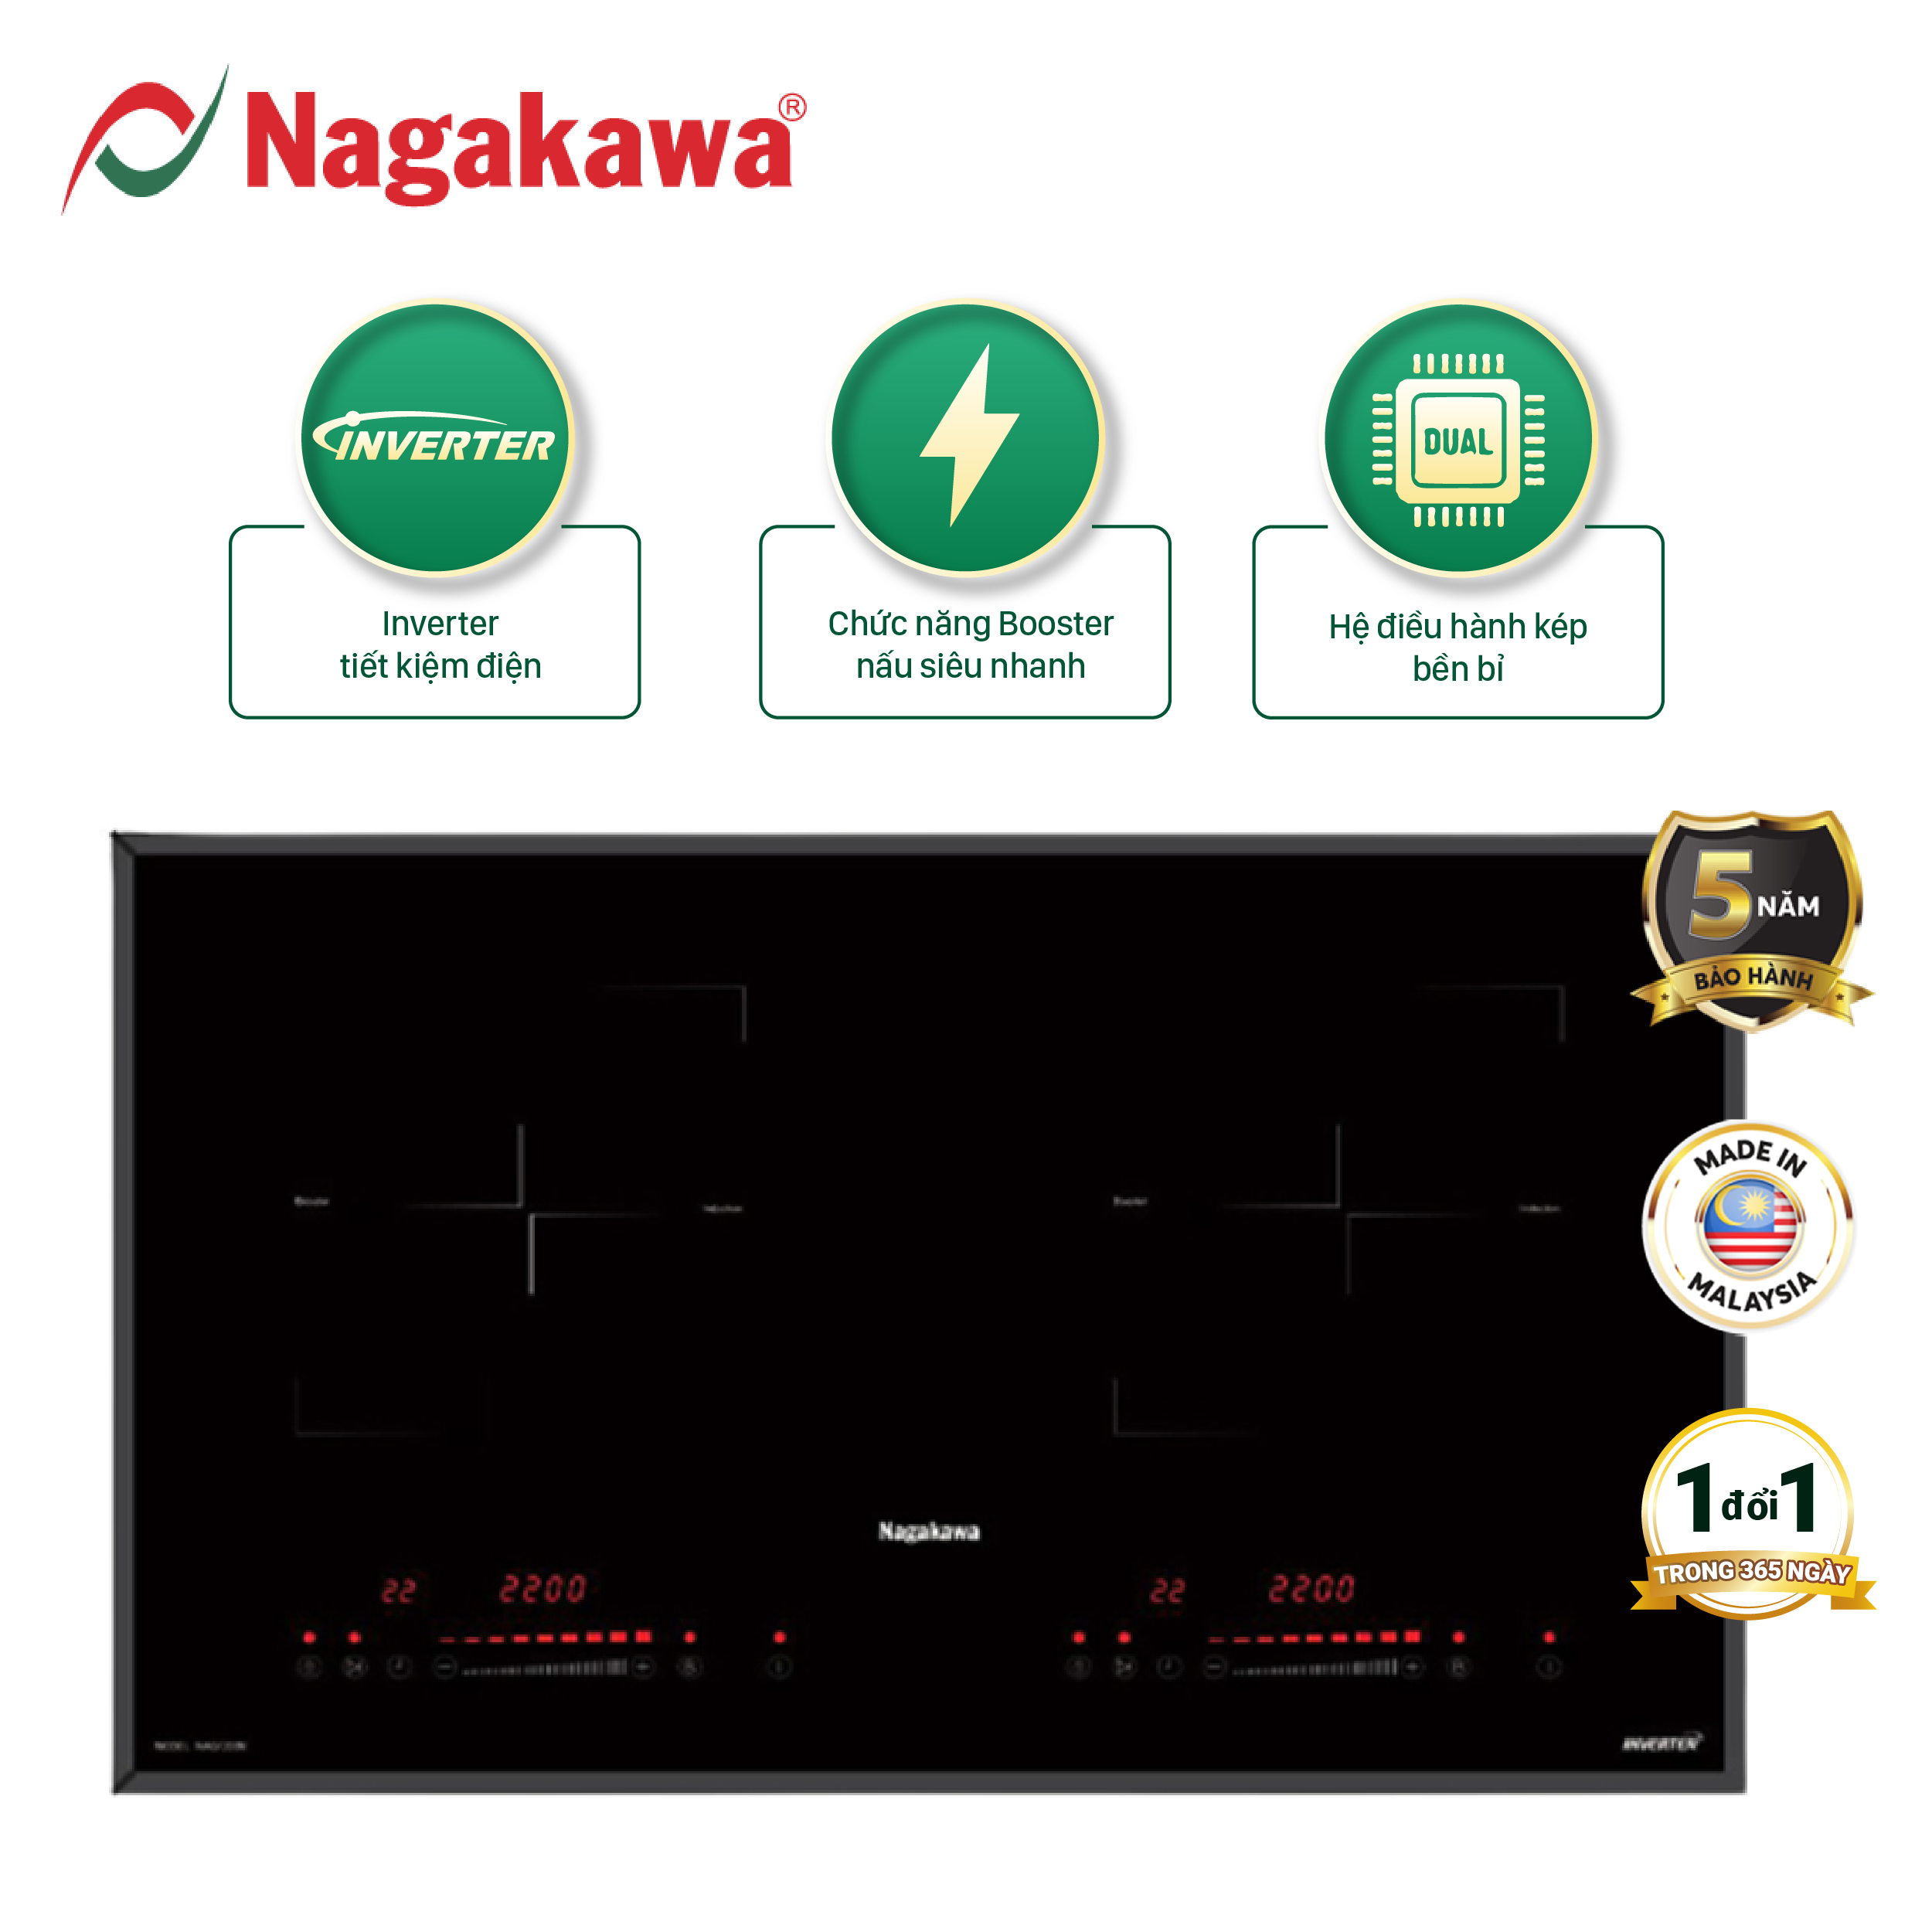 Miễn phí giao lắp toàn quốc - Bếp Âm Từ Đôi Premium Nagakawa NAG1202M (73 cm) - Made in Malaysia - Bảo hành 5 năm - Hàng Chính Hãng